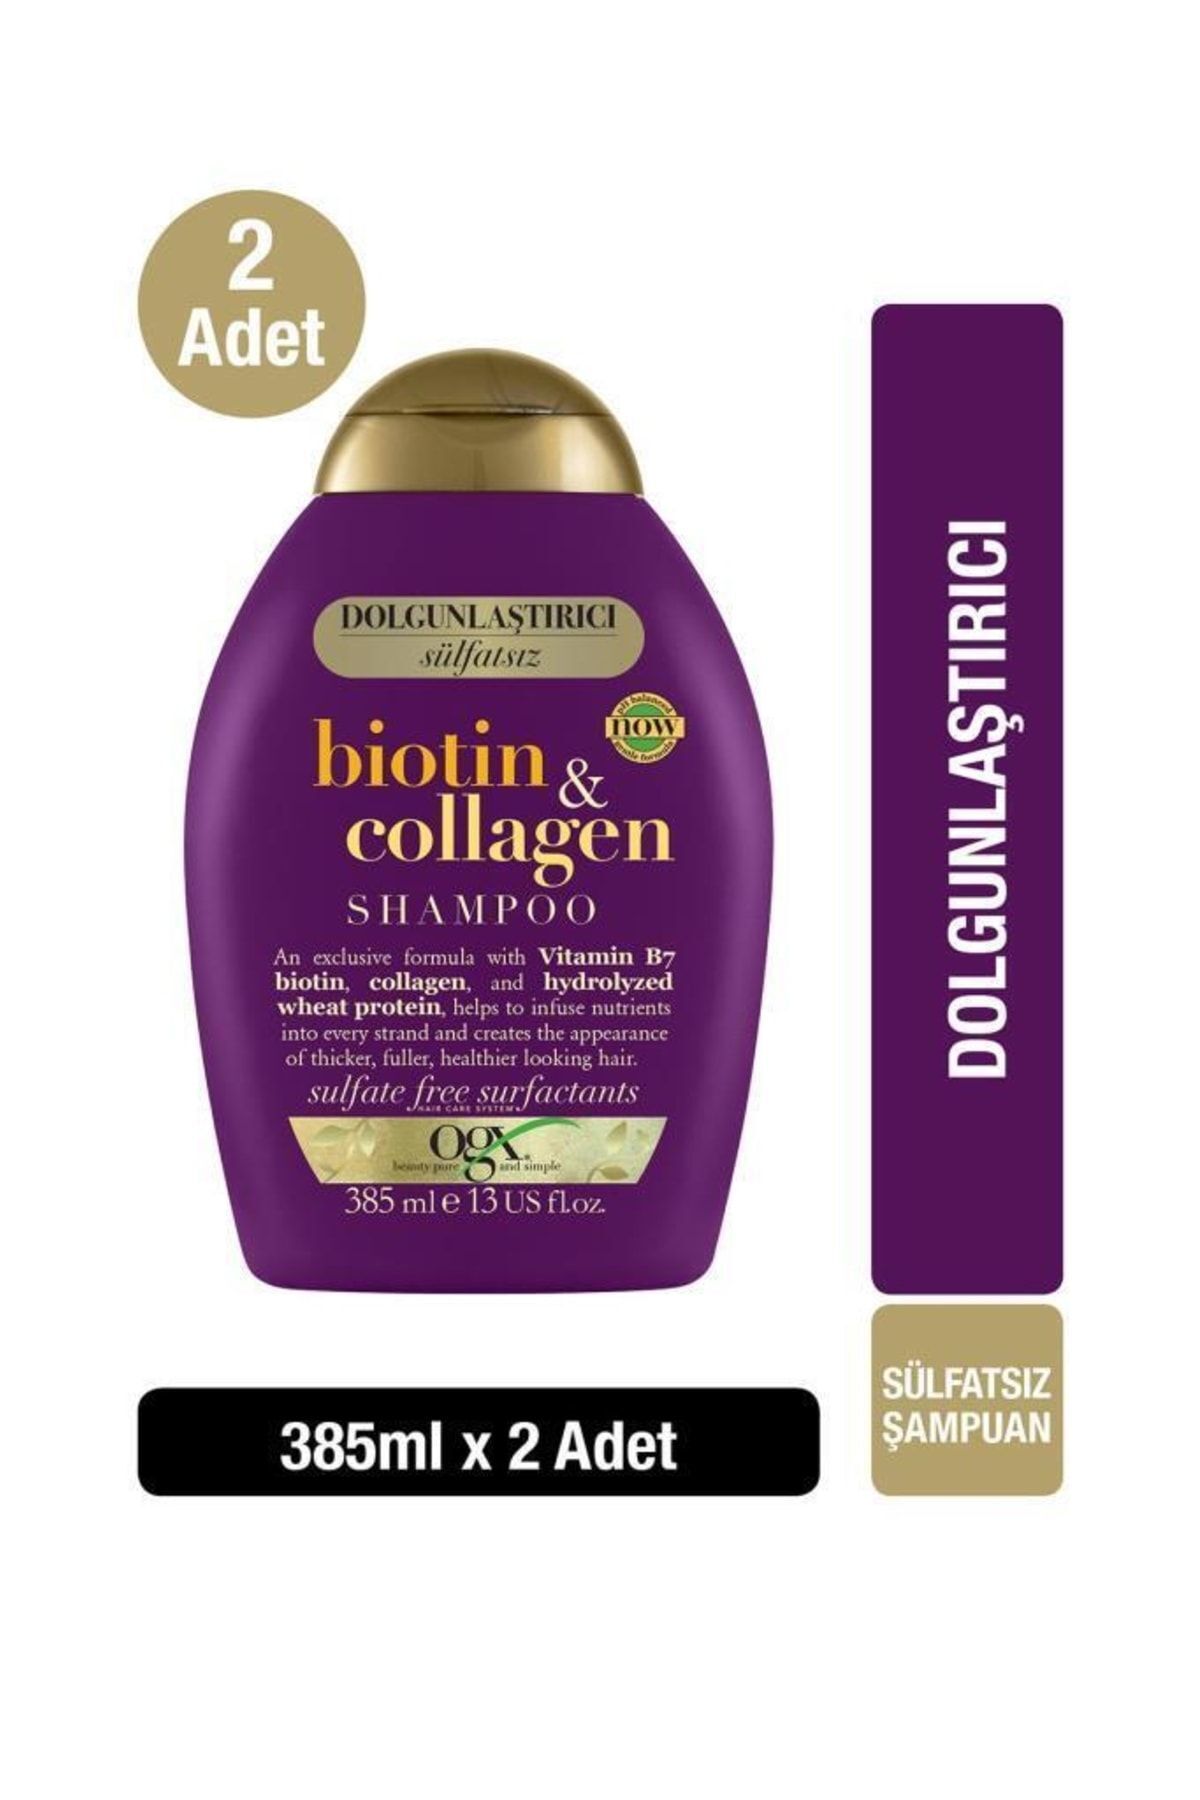 OGX Dolgunlaştırıcı Biotin & Collagen Şampuan 385 ml X 2 Adet